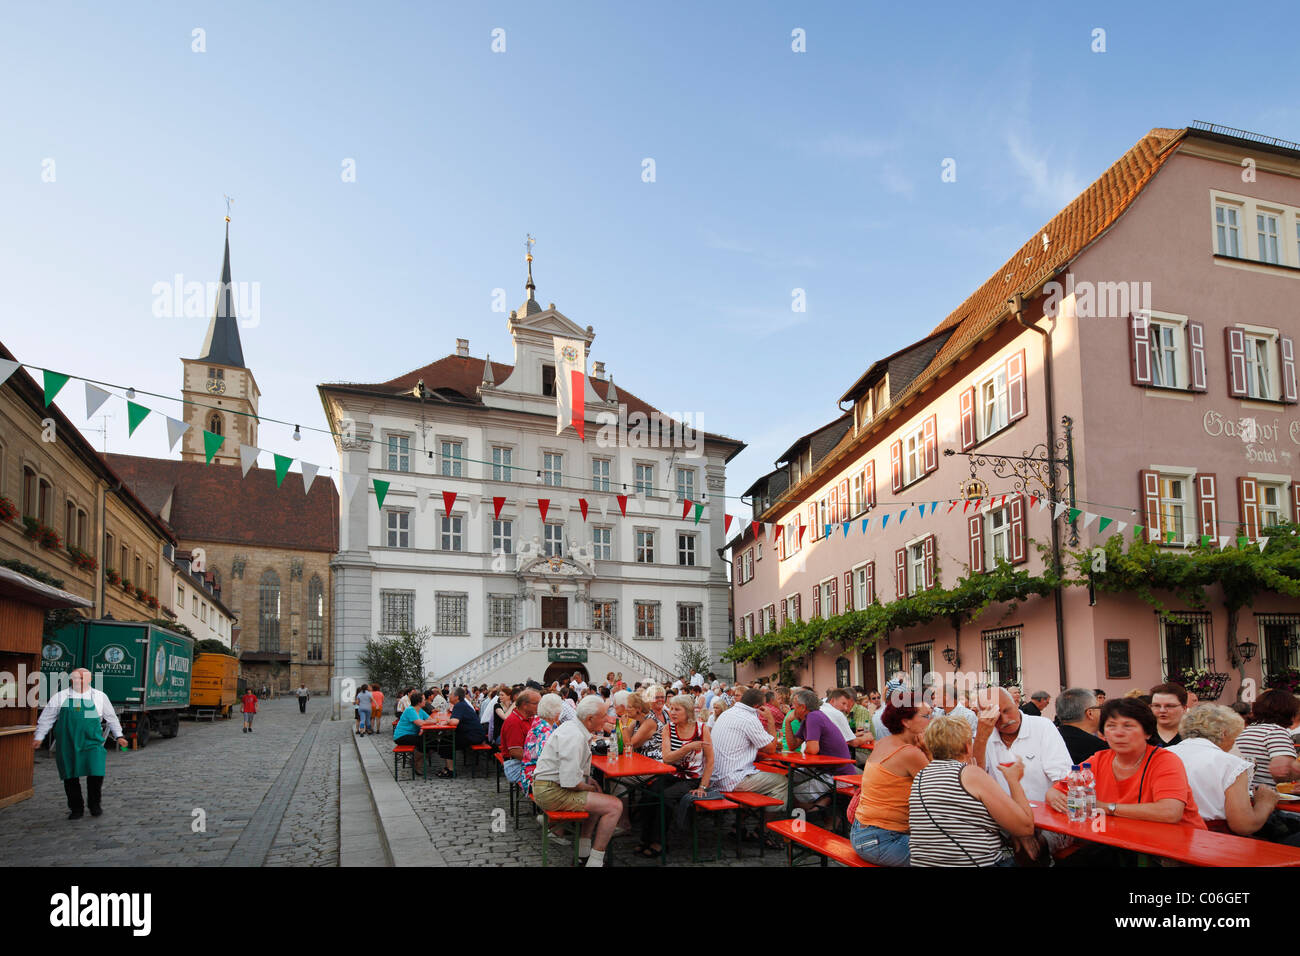 Il festival del vino, Iphofen, regione Main-Franconia, bassa Franconia, Franconia, Baviera, Germania, Europa Foto Stock